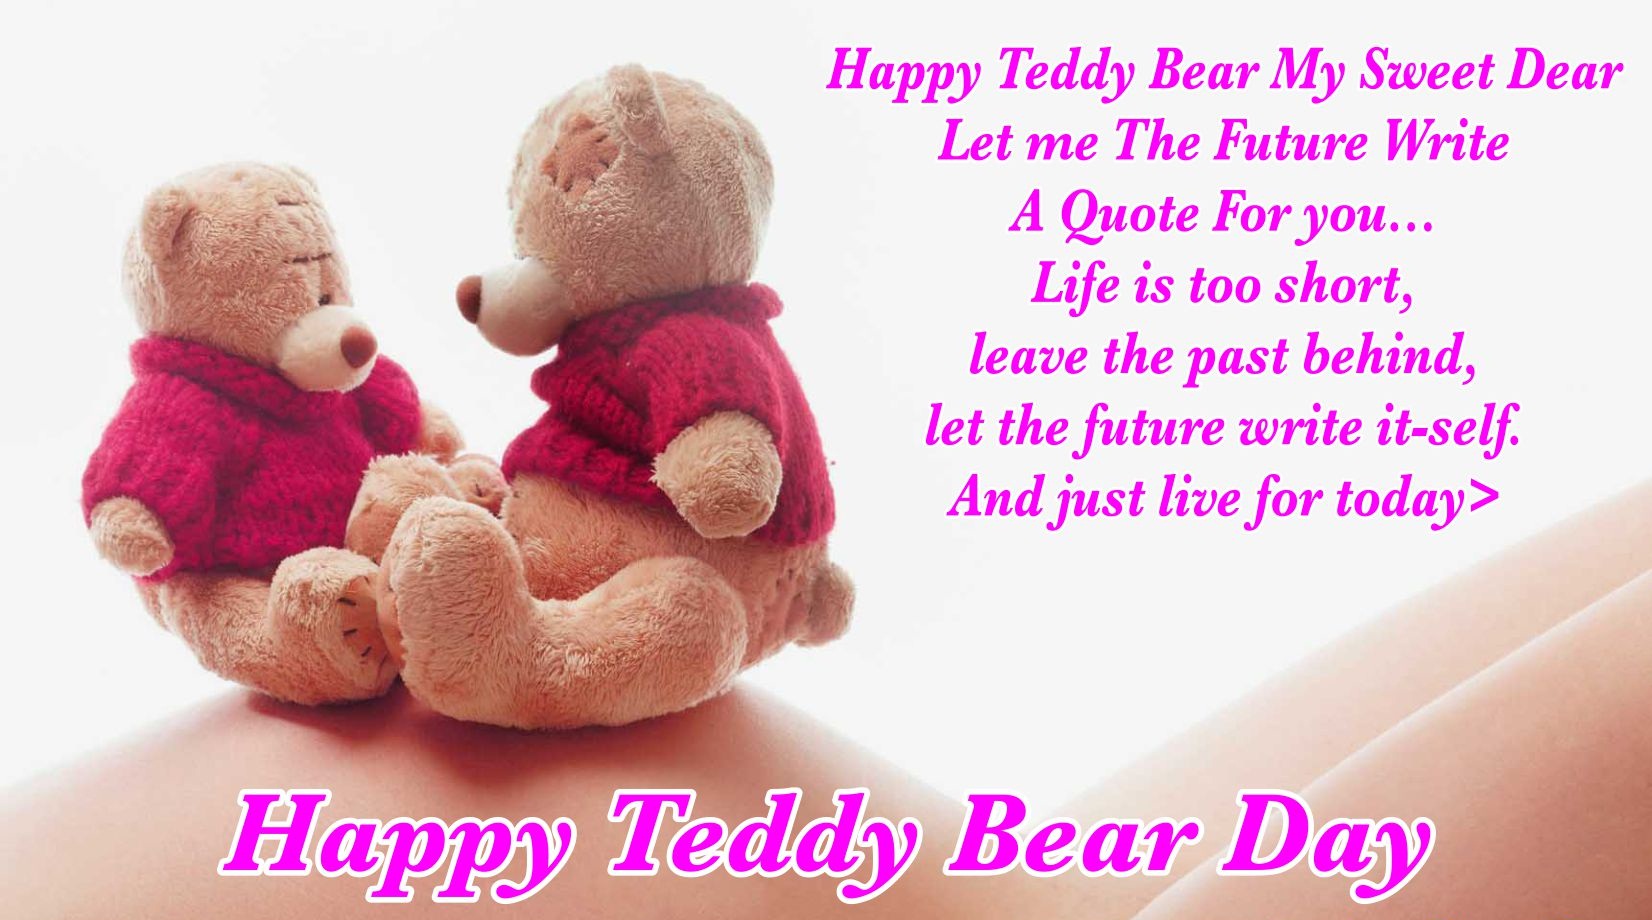 Happy-Teddy-Day-Card greeting 2016